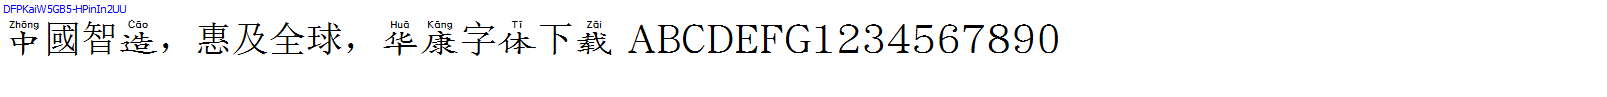 華康字體DFPKaiW5GB5-HPinIn2UU.TTF